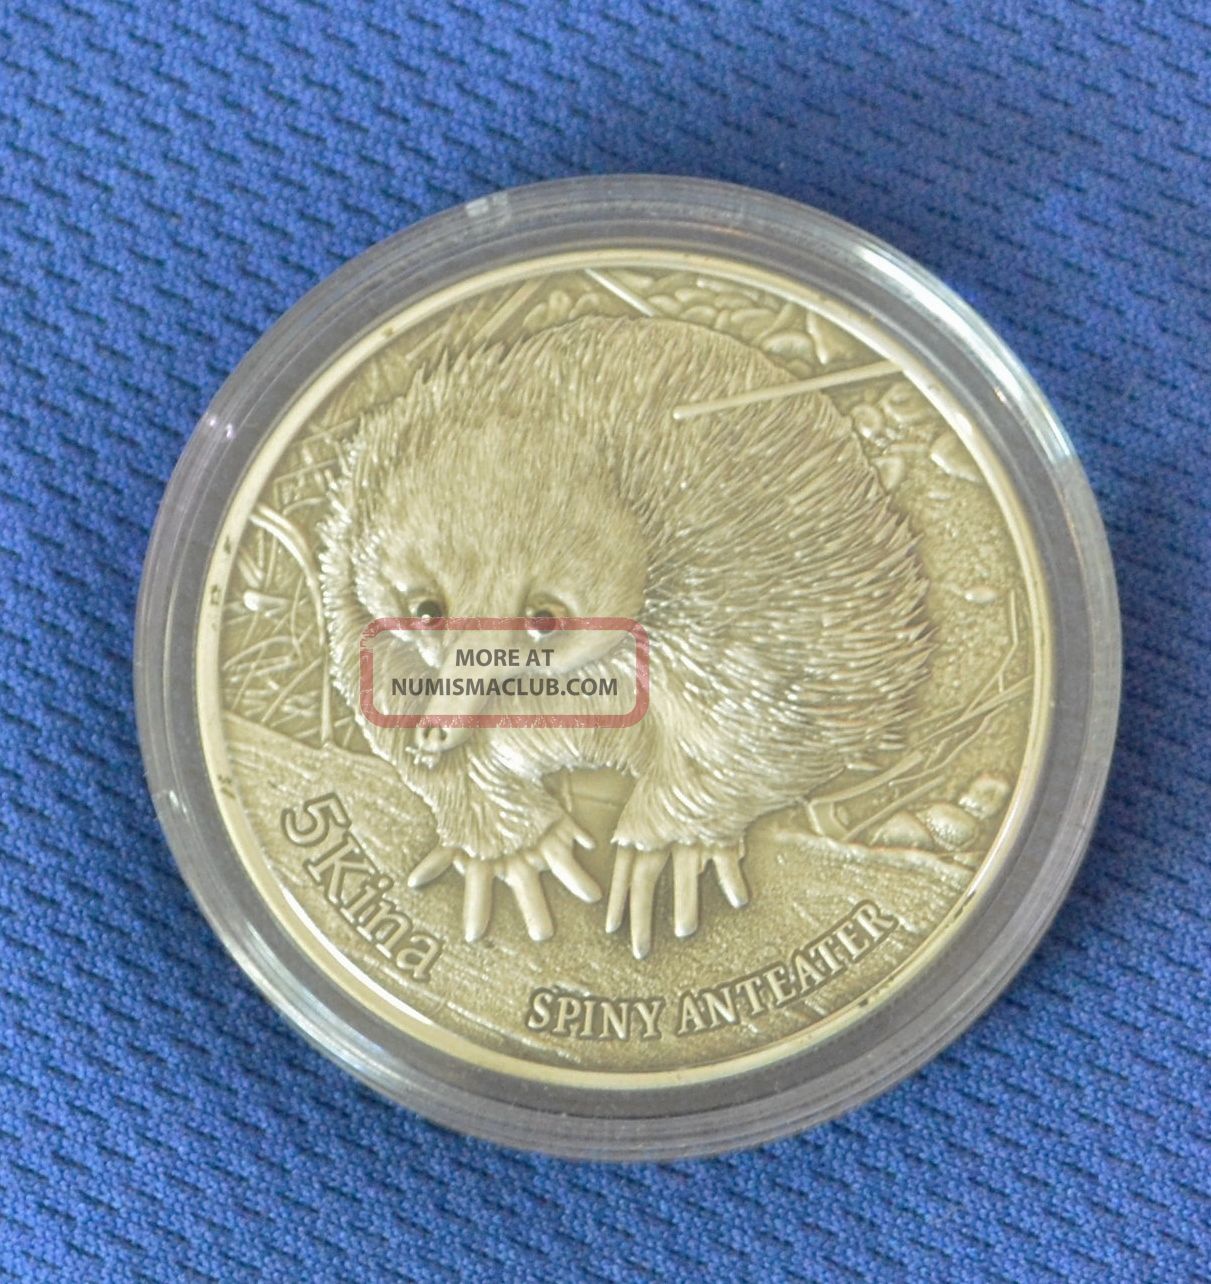 2012 Papua Guinea 5 Kina Spiny Anteater Wildlife Silver Coin Black Diamonds. Australia & Oceania photo